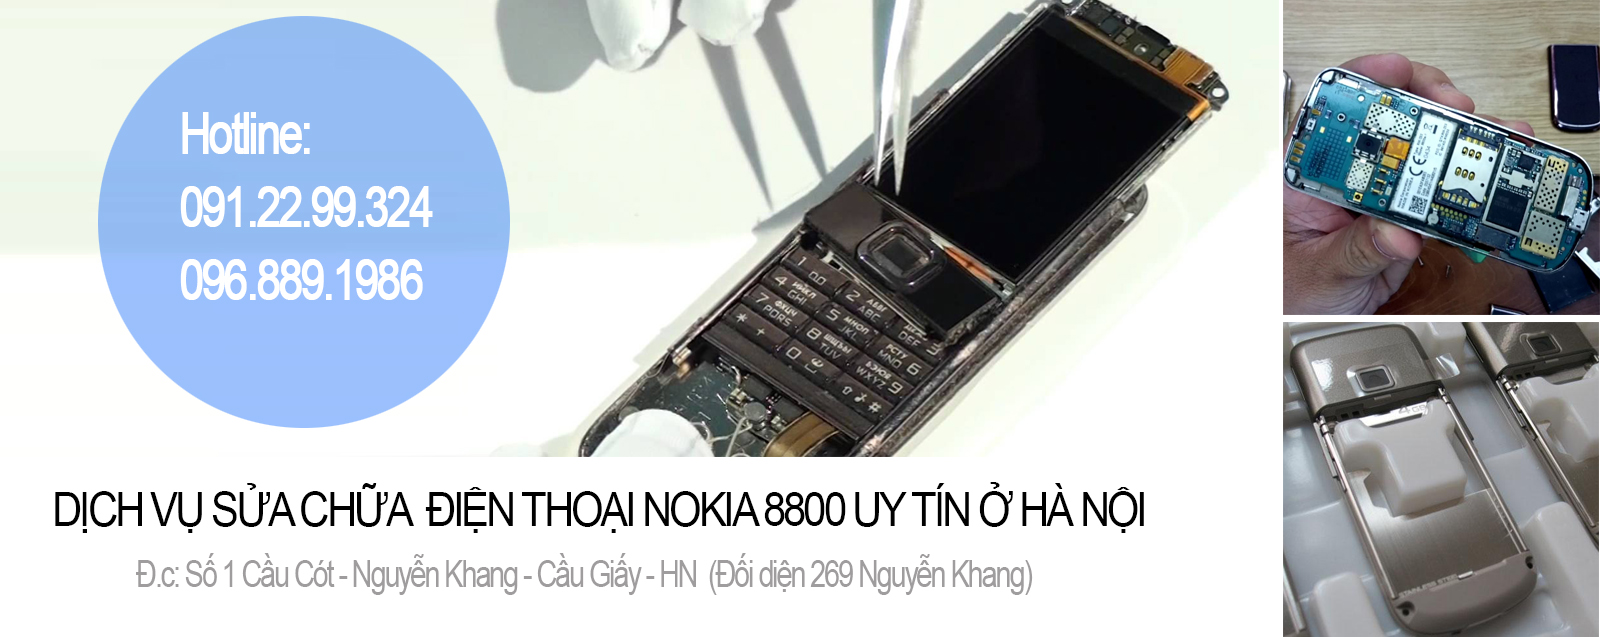 Dịch vụ sửa chữa điện thoại Nokia 8800 uy tín ở tại Hà Nội